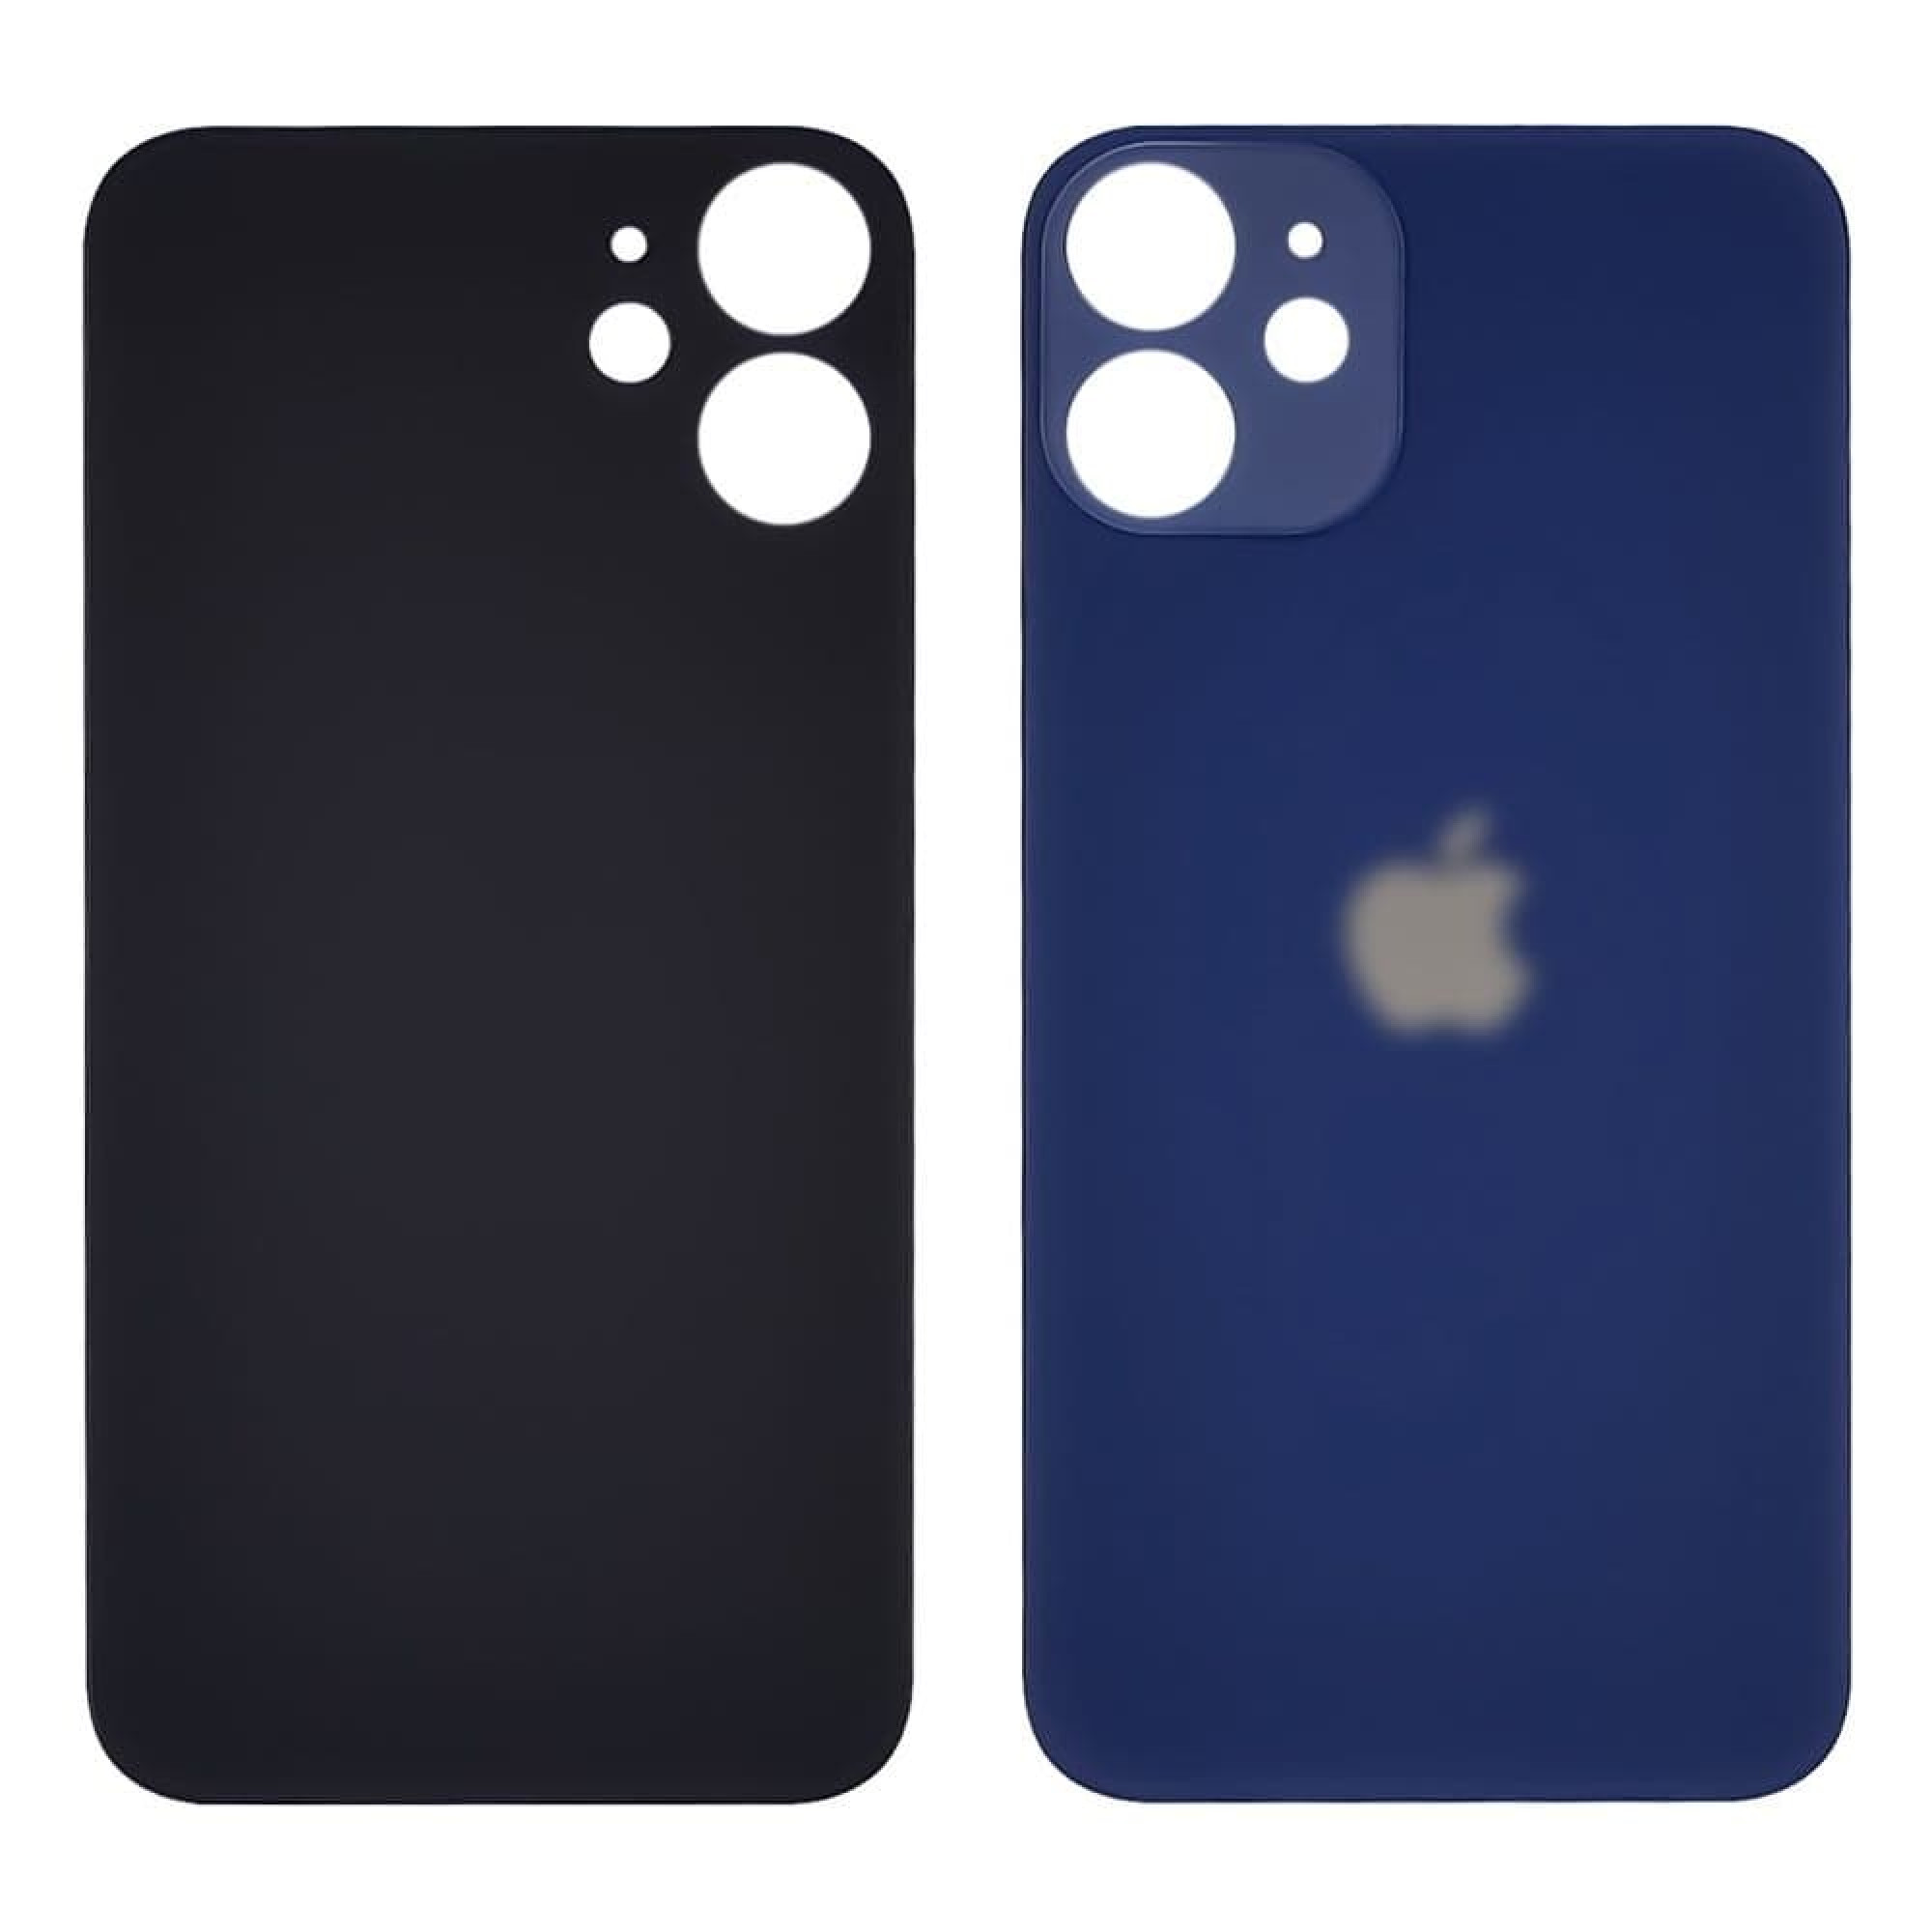 Задняя крышка для Apple iPhone 12 mini (широкое отверстие под камеру), синяя